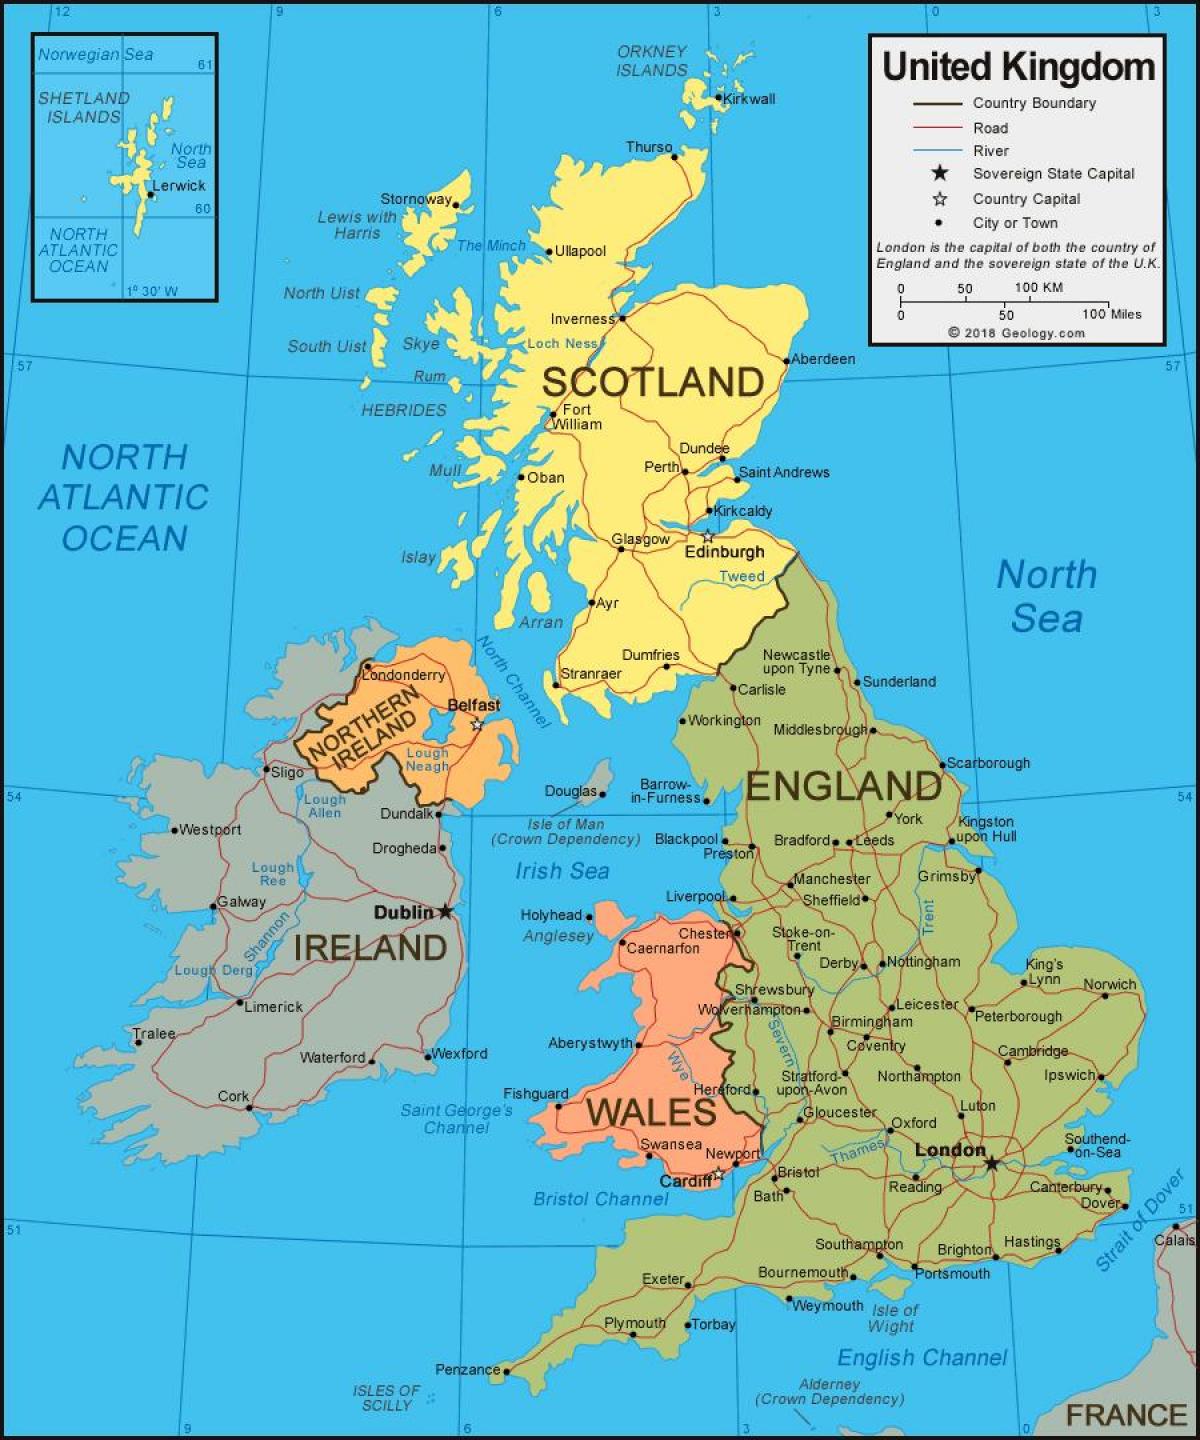 خريطة إدارية للمملكة المتحدة (المملكة المتحدة)